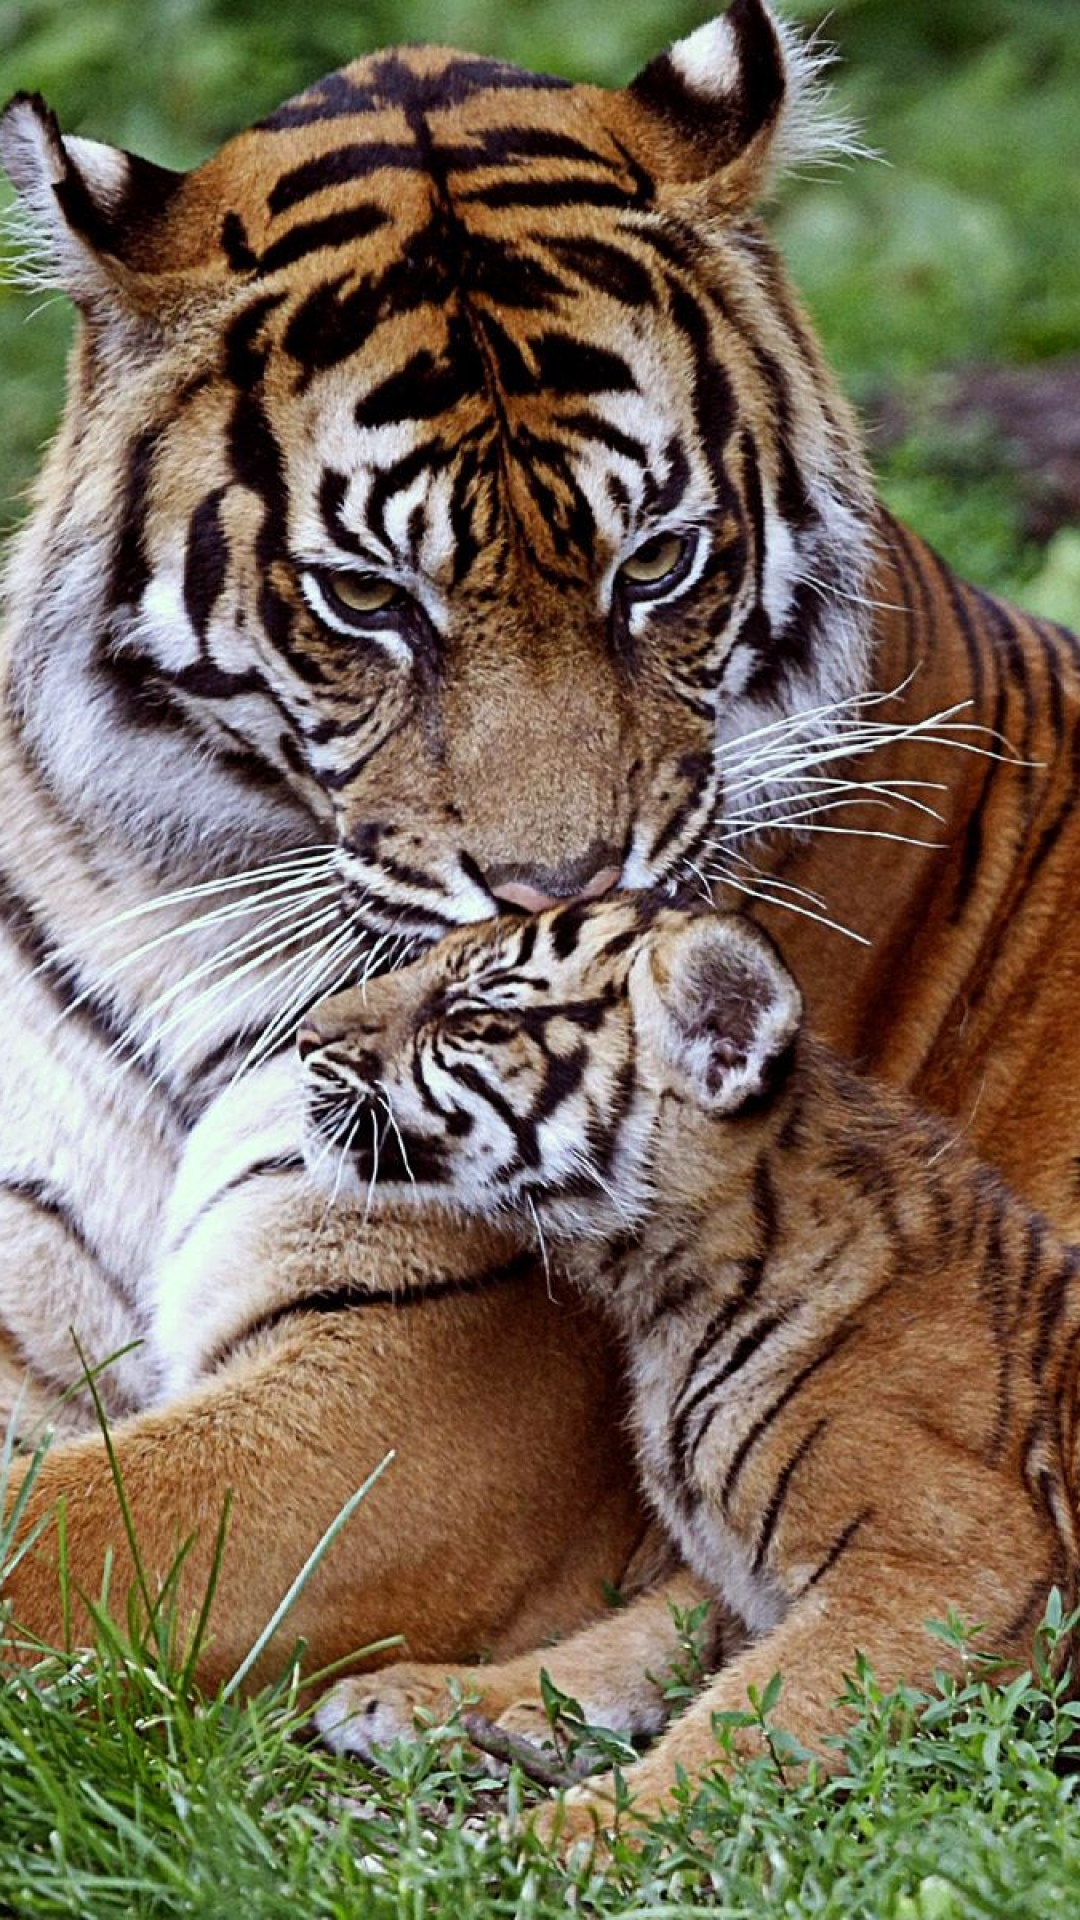 tapete interativo,tiger,landtier,tierwelt,bengalischer tiger,sibirischer tiger